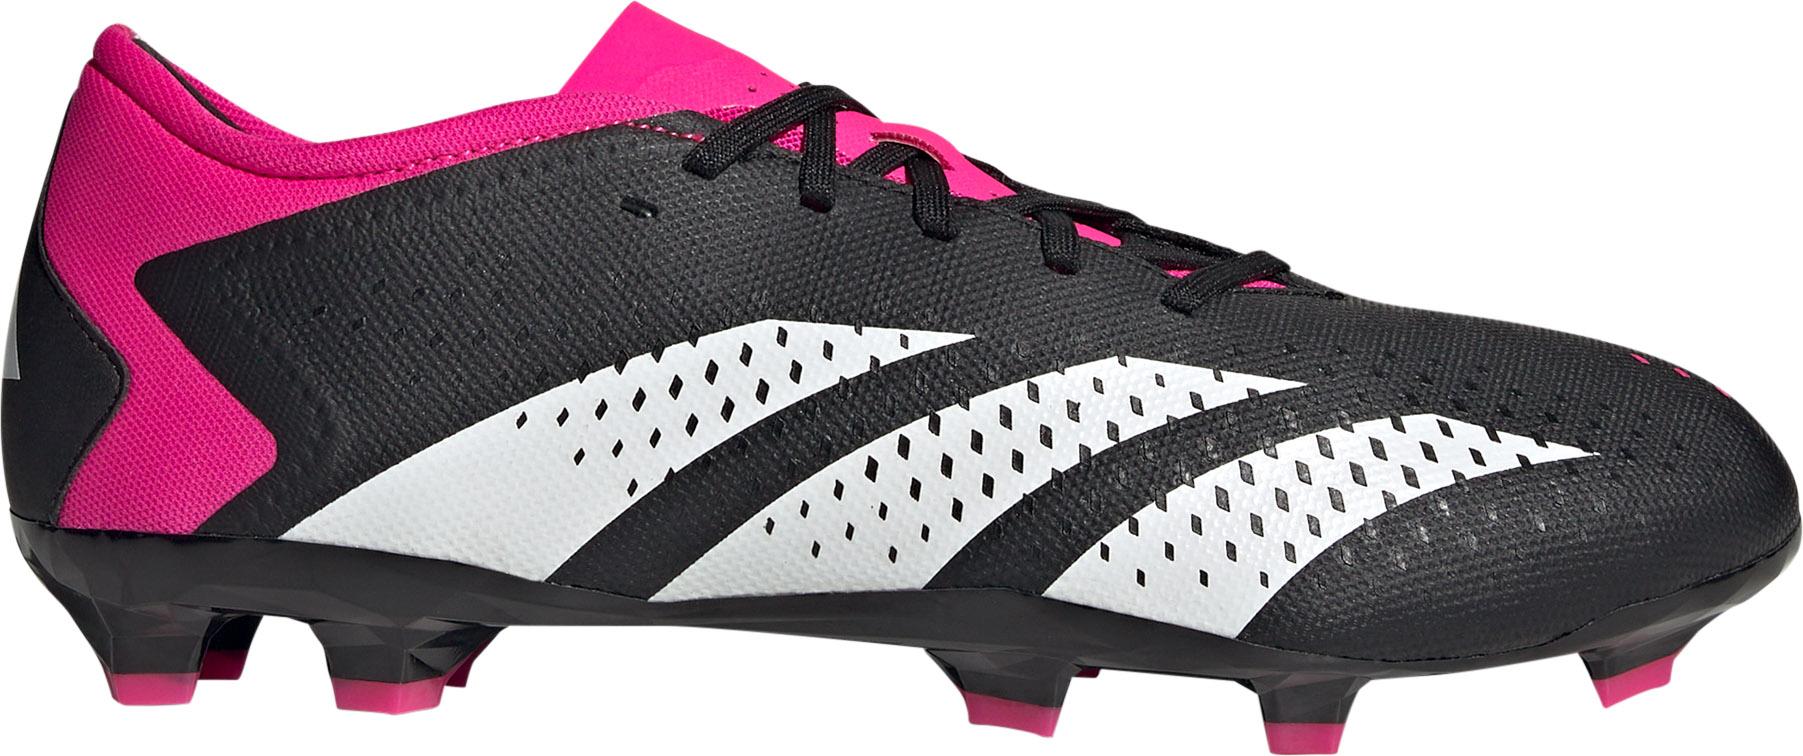 Adidas PREDATOR ACCURACY.3 L FG Fußballschuhe core black-ftwr shock pink im Online Shop von SportScheck kaufen